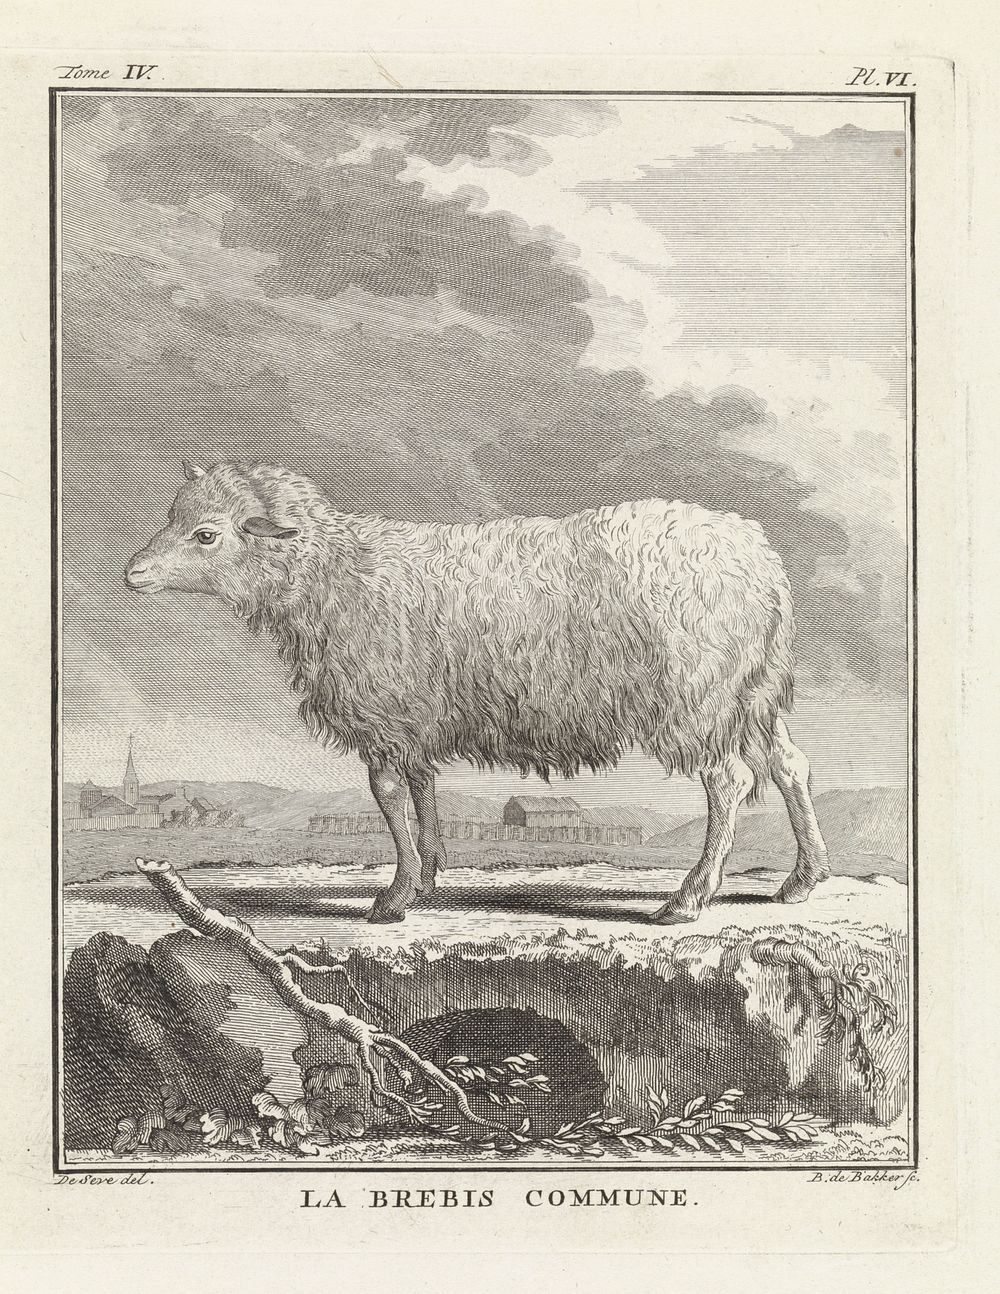 Schaap (1762 - 1804) by Barent de Bakker and De Seve